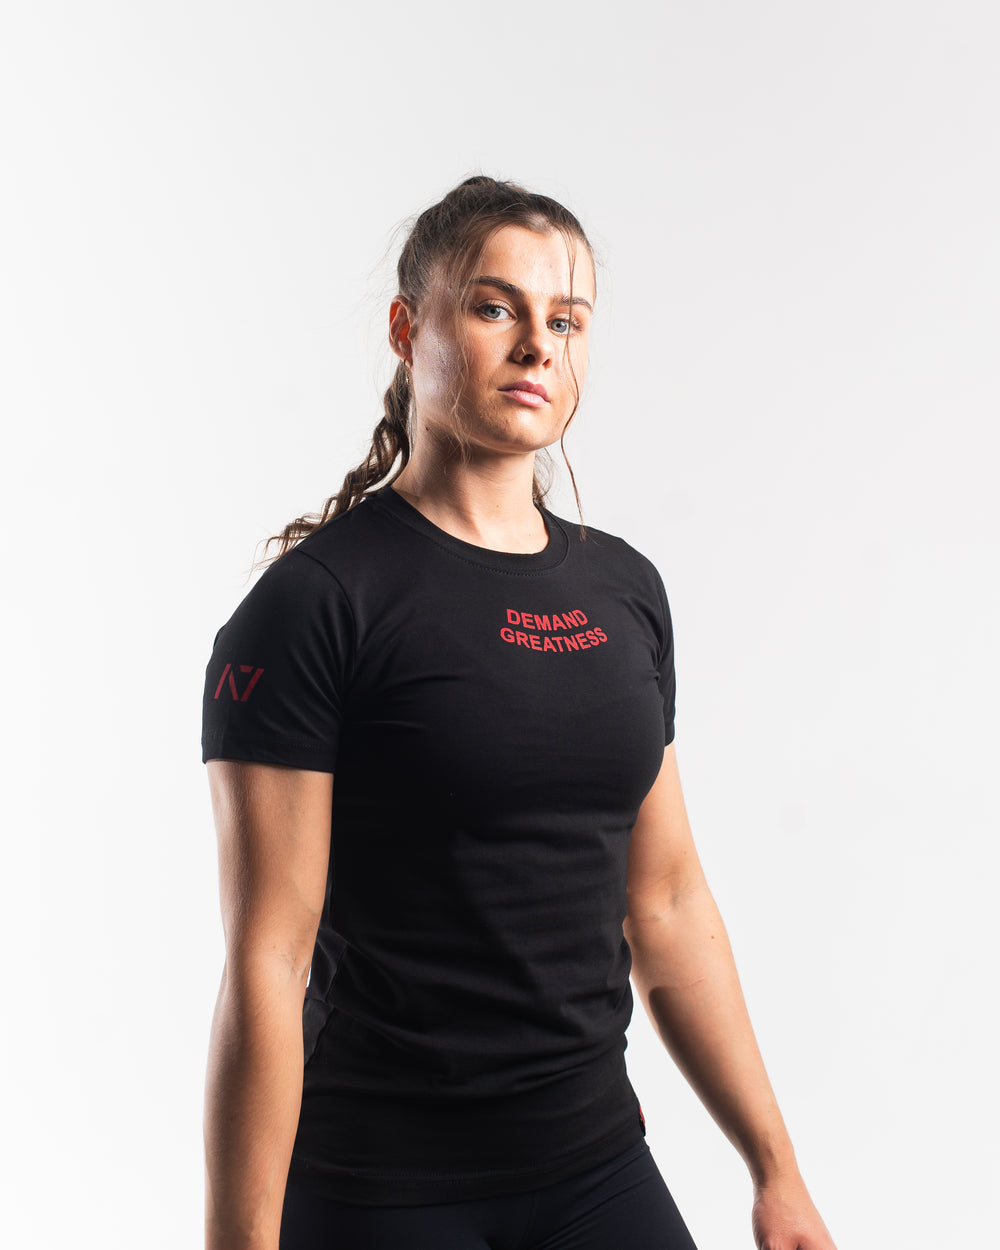 Demand Greatness - Inferno Women's Meet Shirt